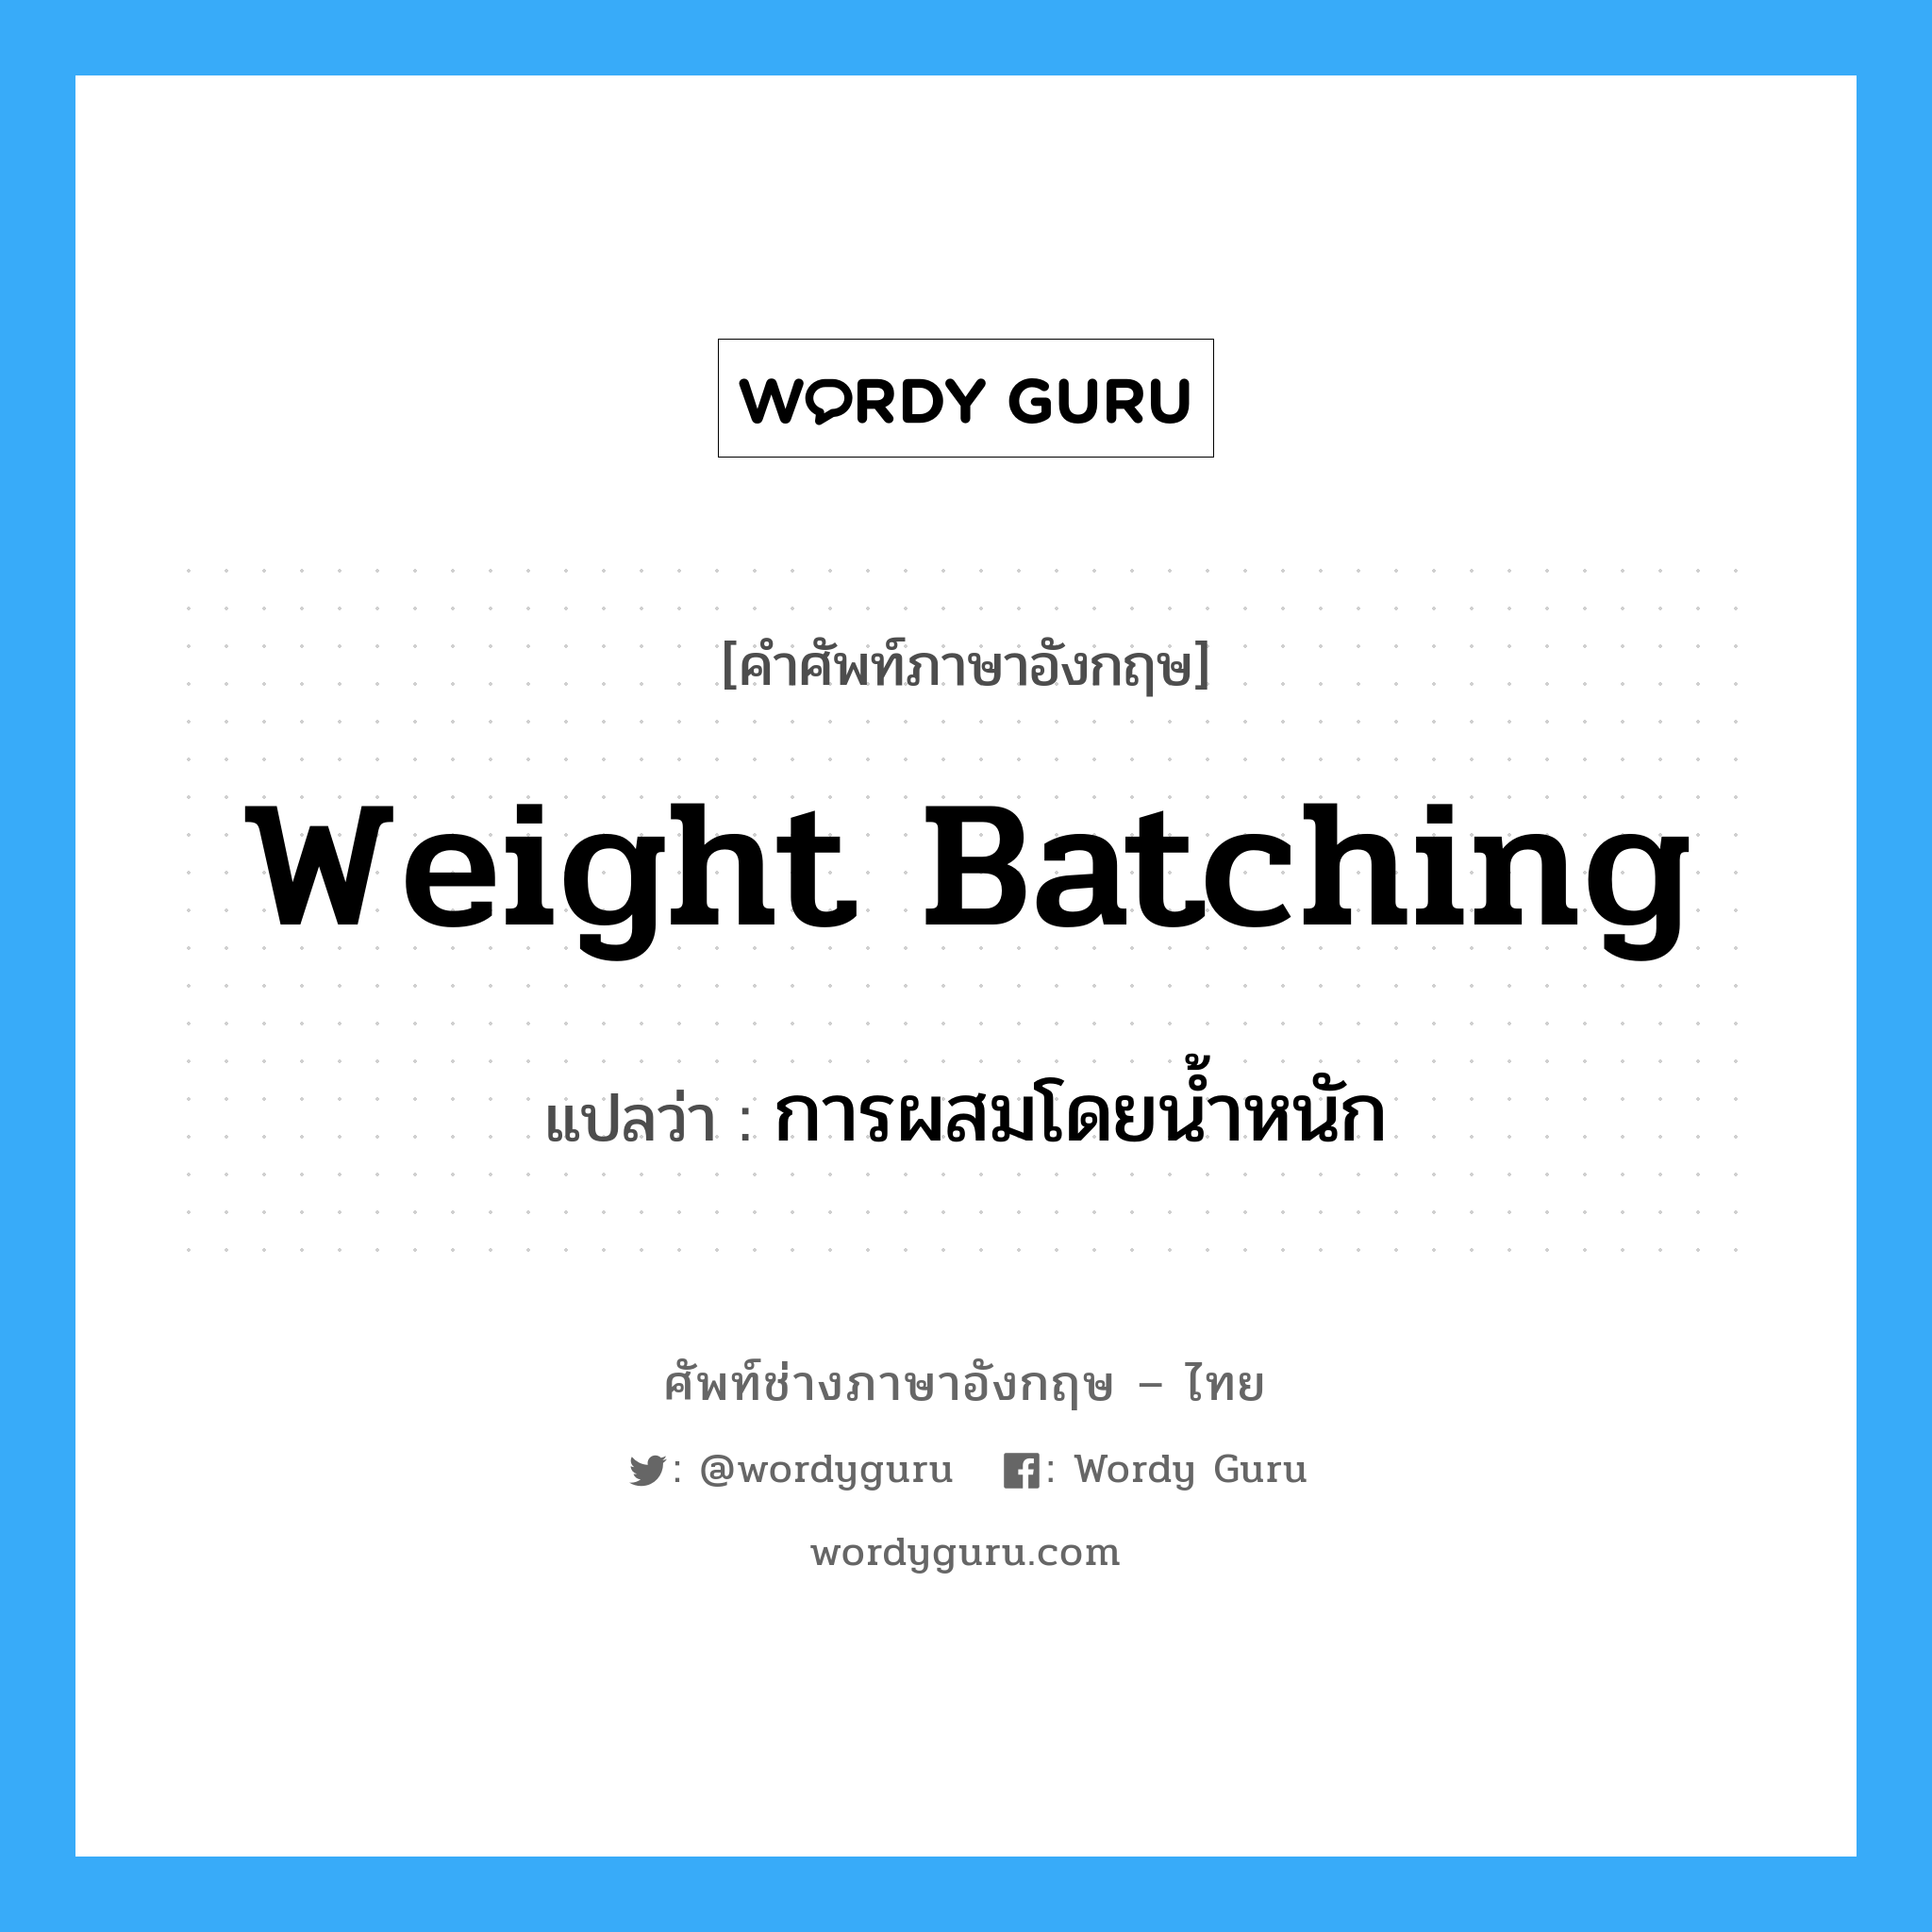 weight batching แปลว่า?, คำศัพท์ช่างภาษาอังกฤษ - ไทย weight batching คำศัพท์ภาษาอังกฤษ weight batching แปลว่า การผสมโดยน้ำหนัก